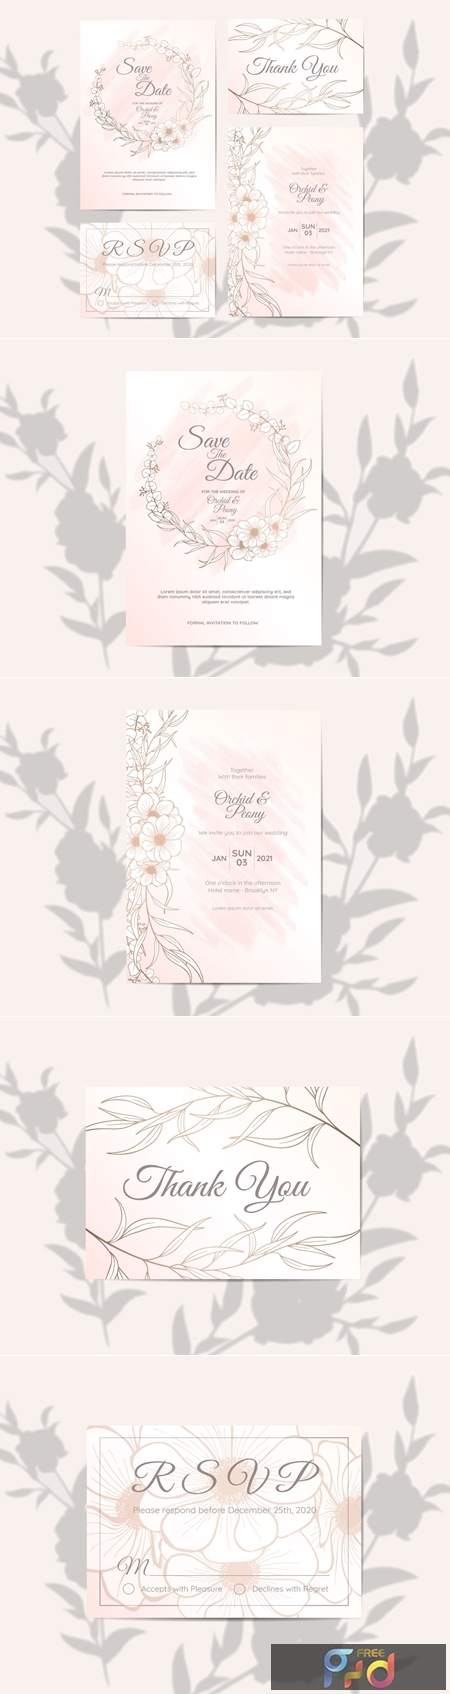 FreePsdVn.com 1906524 TEMPLATE wedding invitation set elegant outlined floral watercolor background 3589518